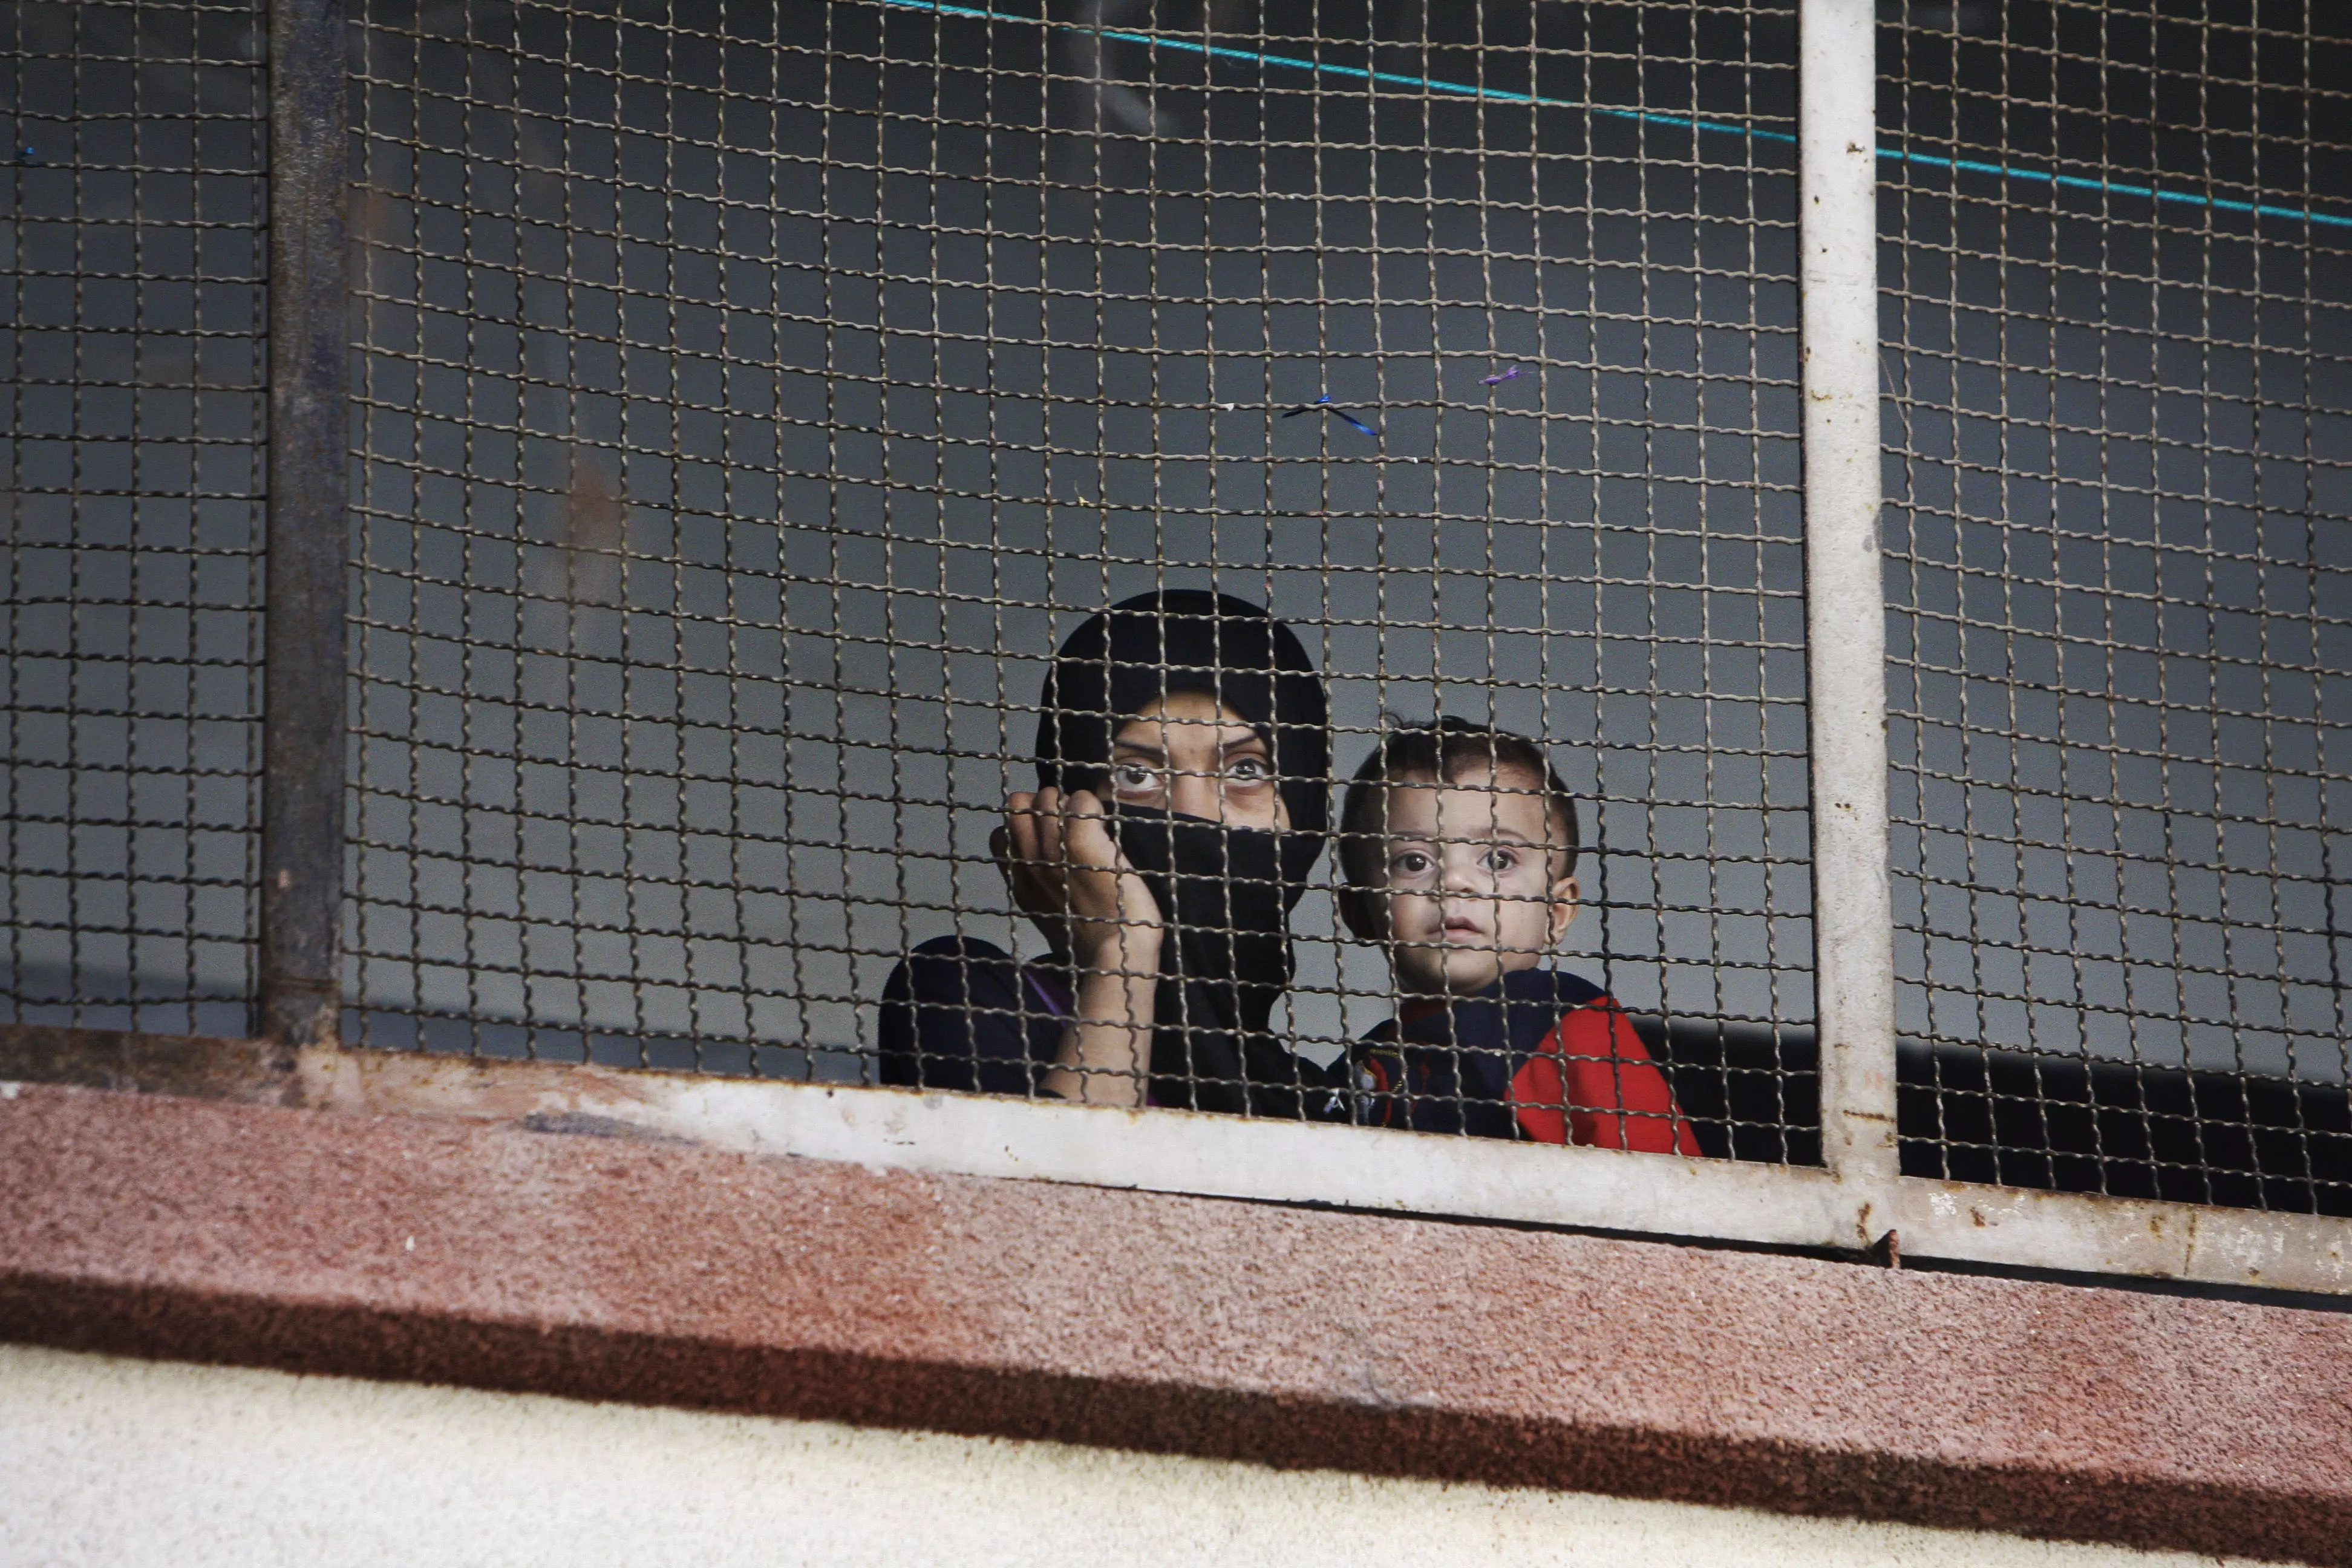 אם סורית ובנה מחפשים מקלט מהקרבות